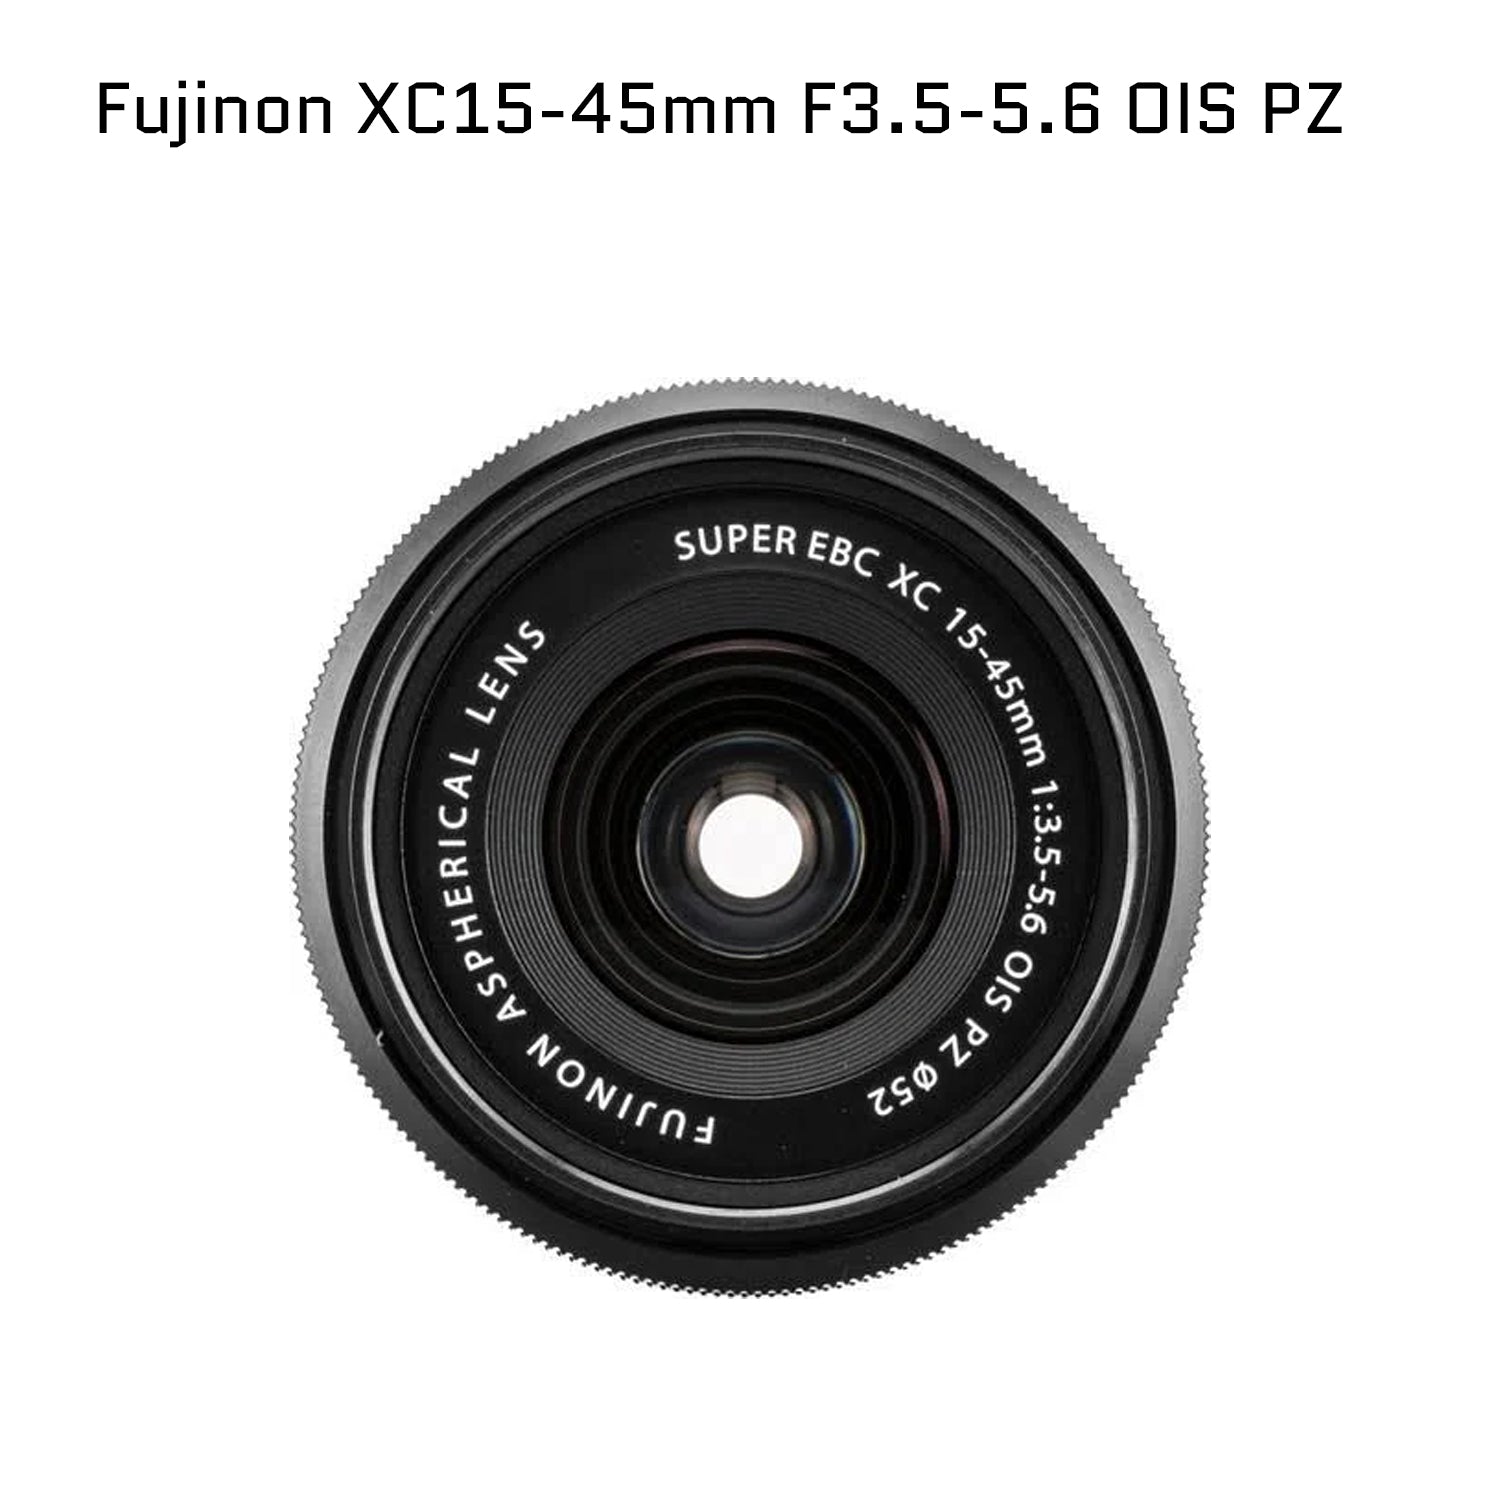 Fujifilm X Series X-T30 II Digital Camera